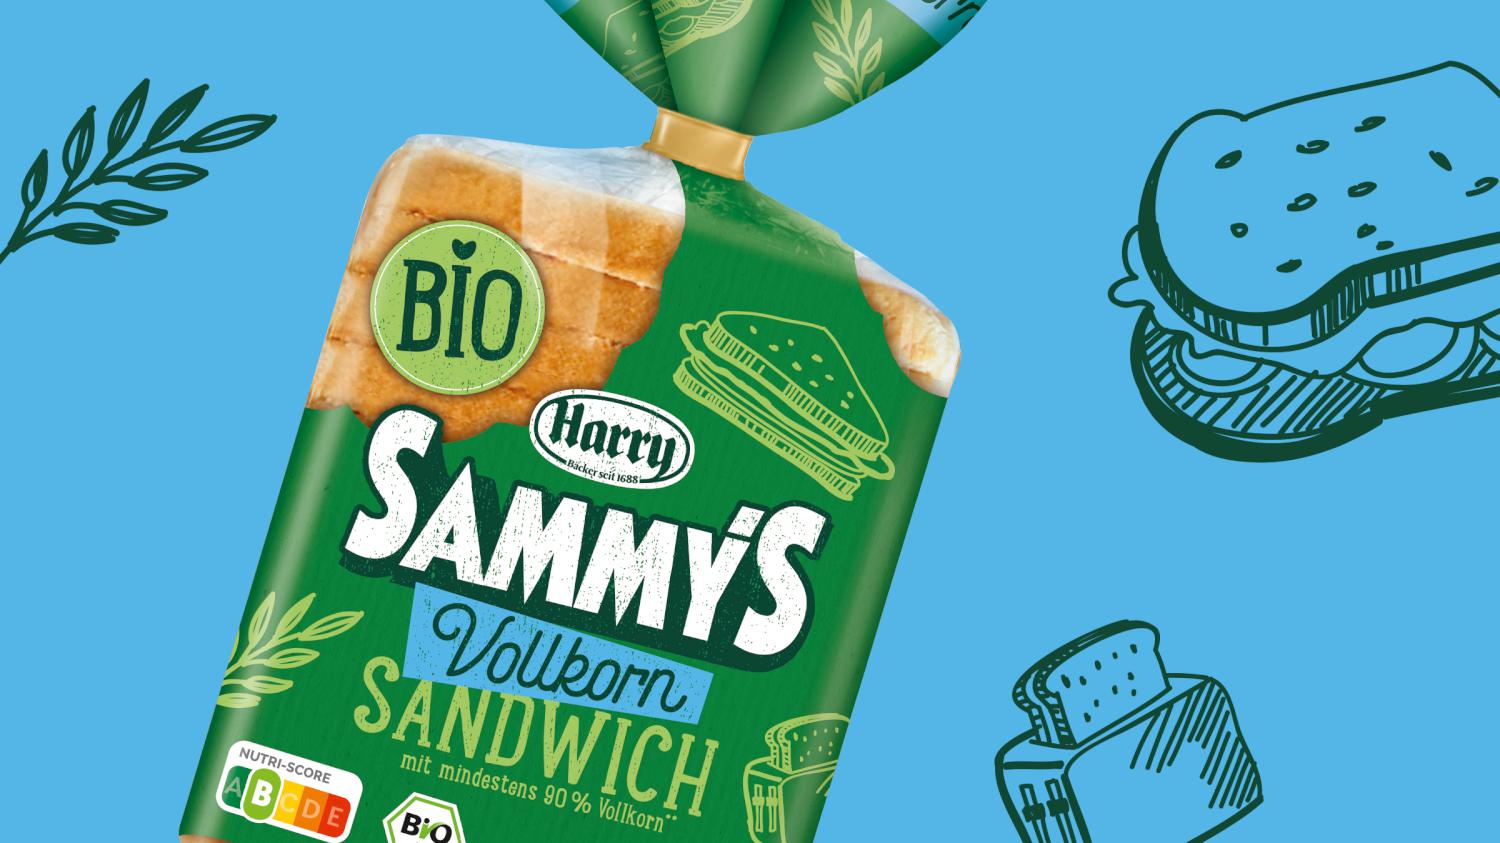 Harry Sammys Bio Sandwich Relaunch Grafikdesign Branding-Strategie Verpackungsdesign Line Extension